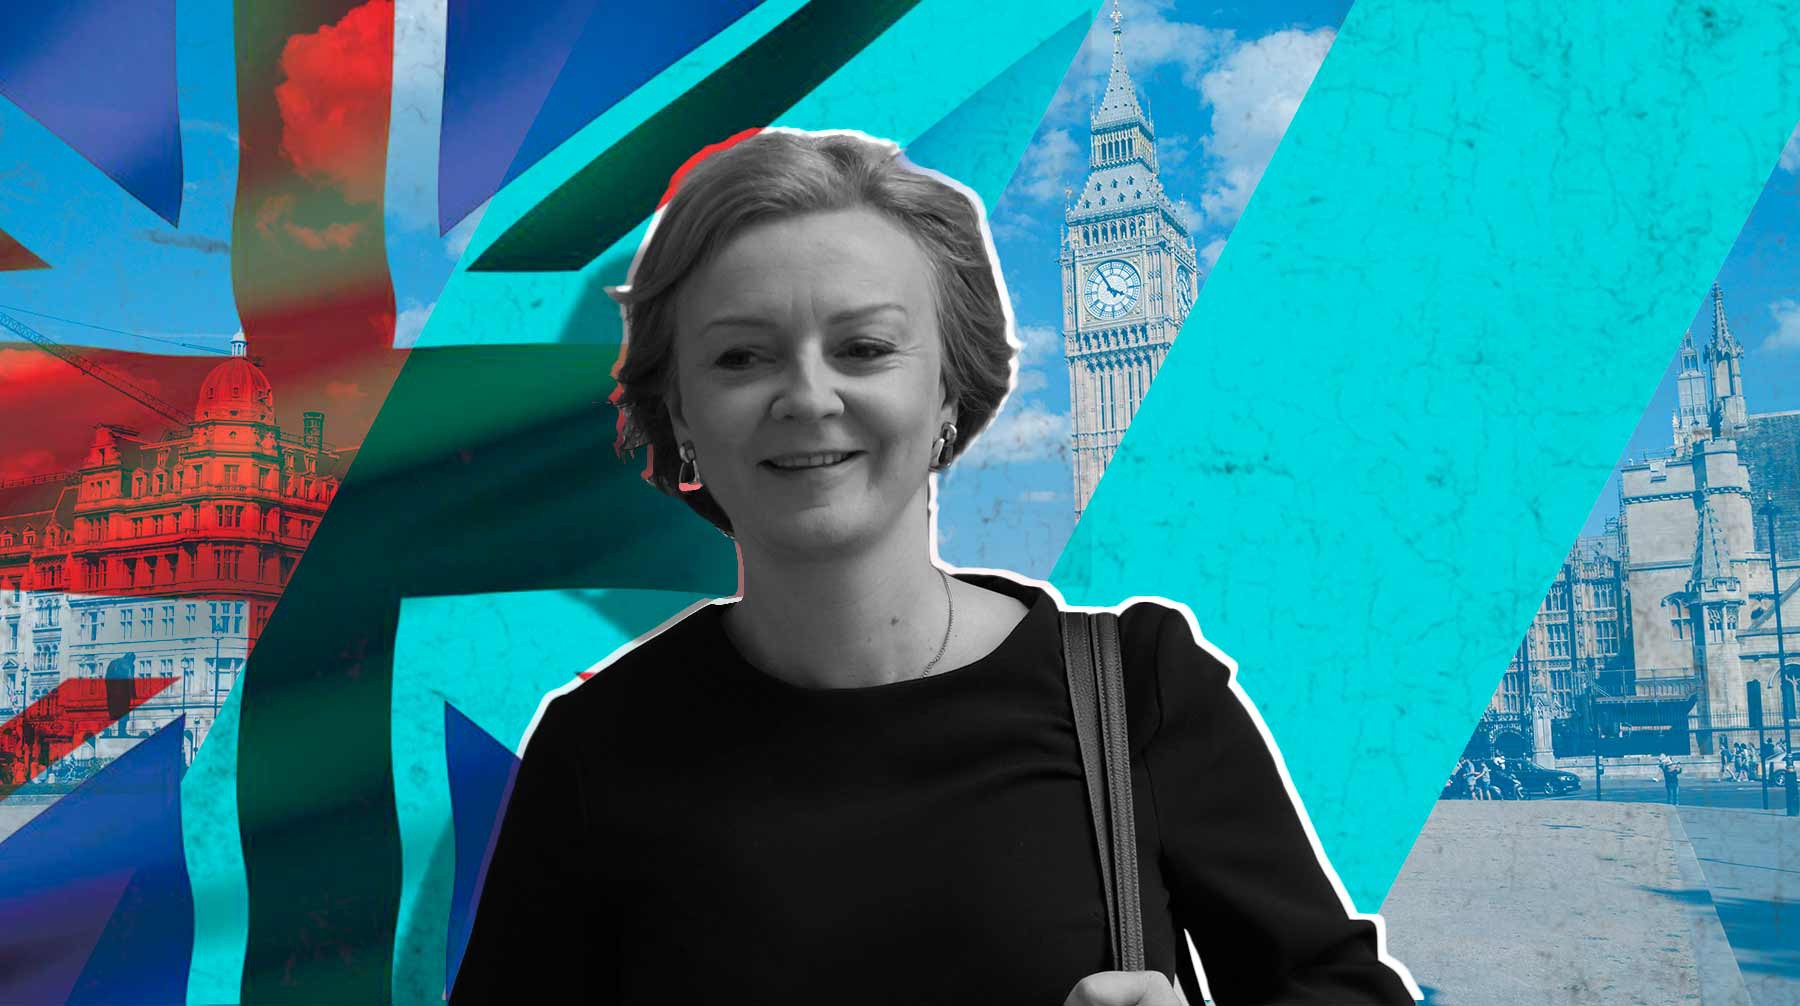 Dailystorm - Гибкая леди: кто такая Лиз Трасс и какую политику она будет вести на посту премьер-министра Великобритании